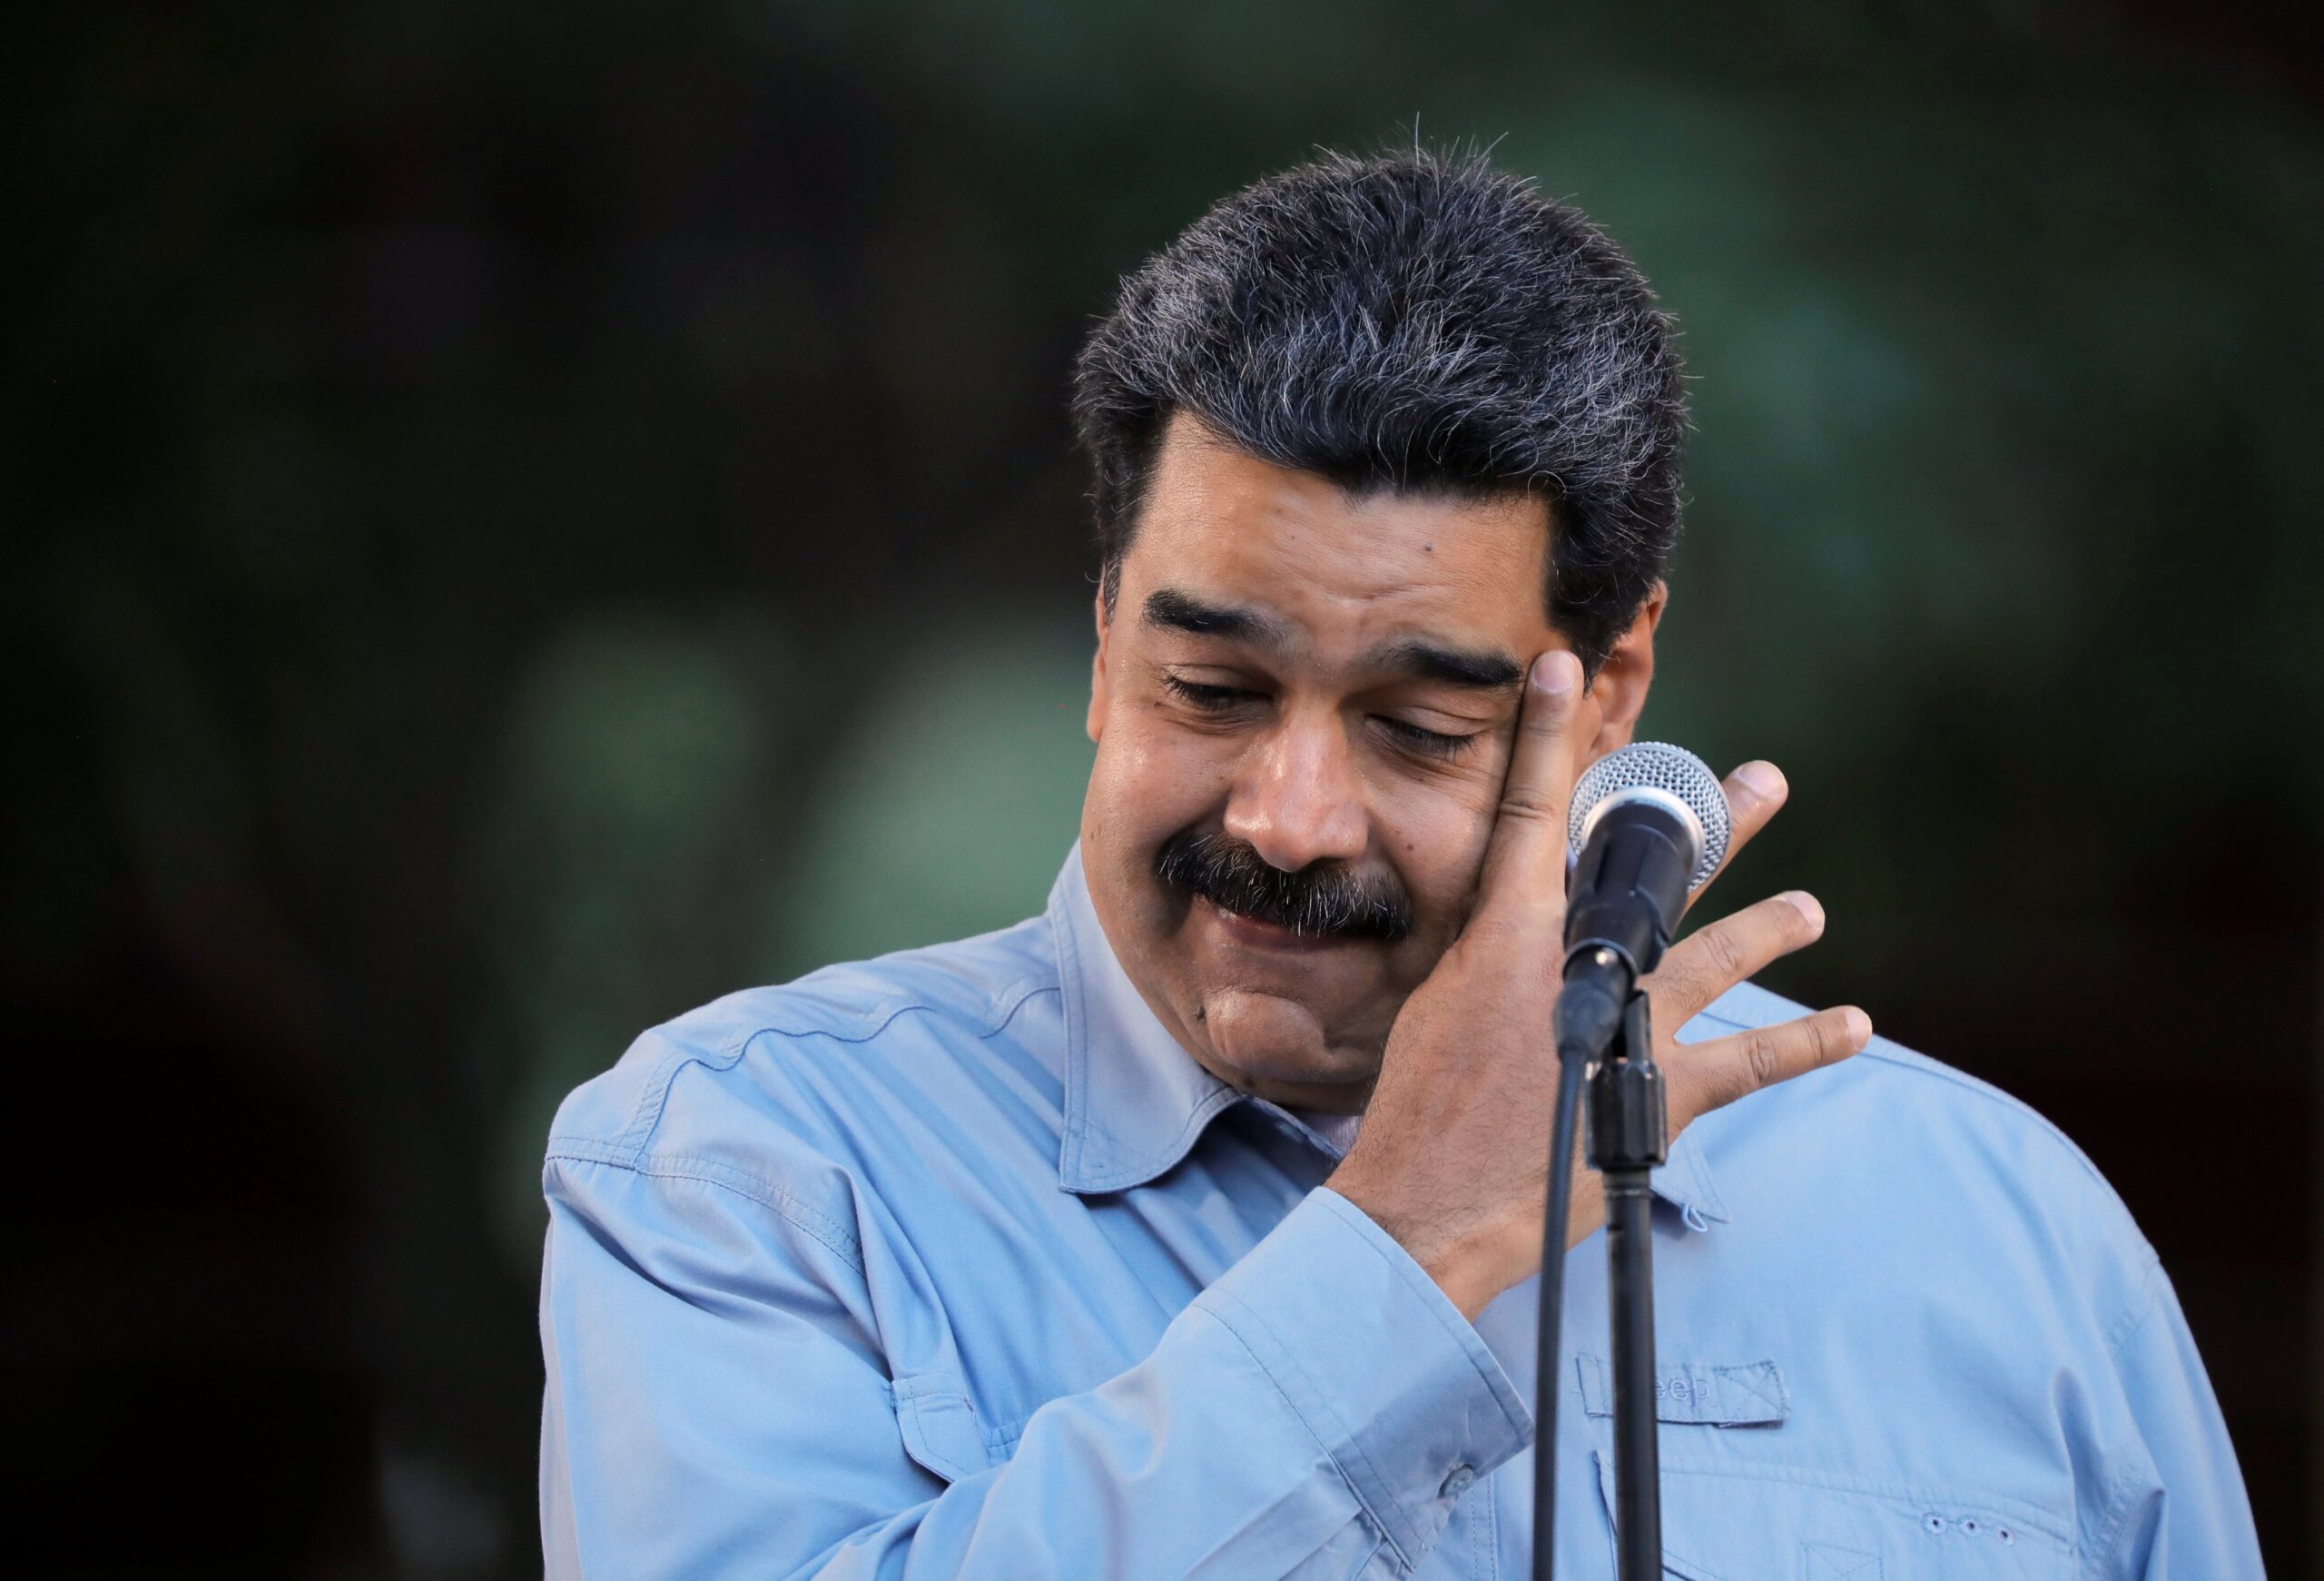 ¿Así o más descarado? Maduro salió a defender a los supuestos “opositores” sancionados